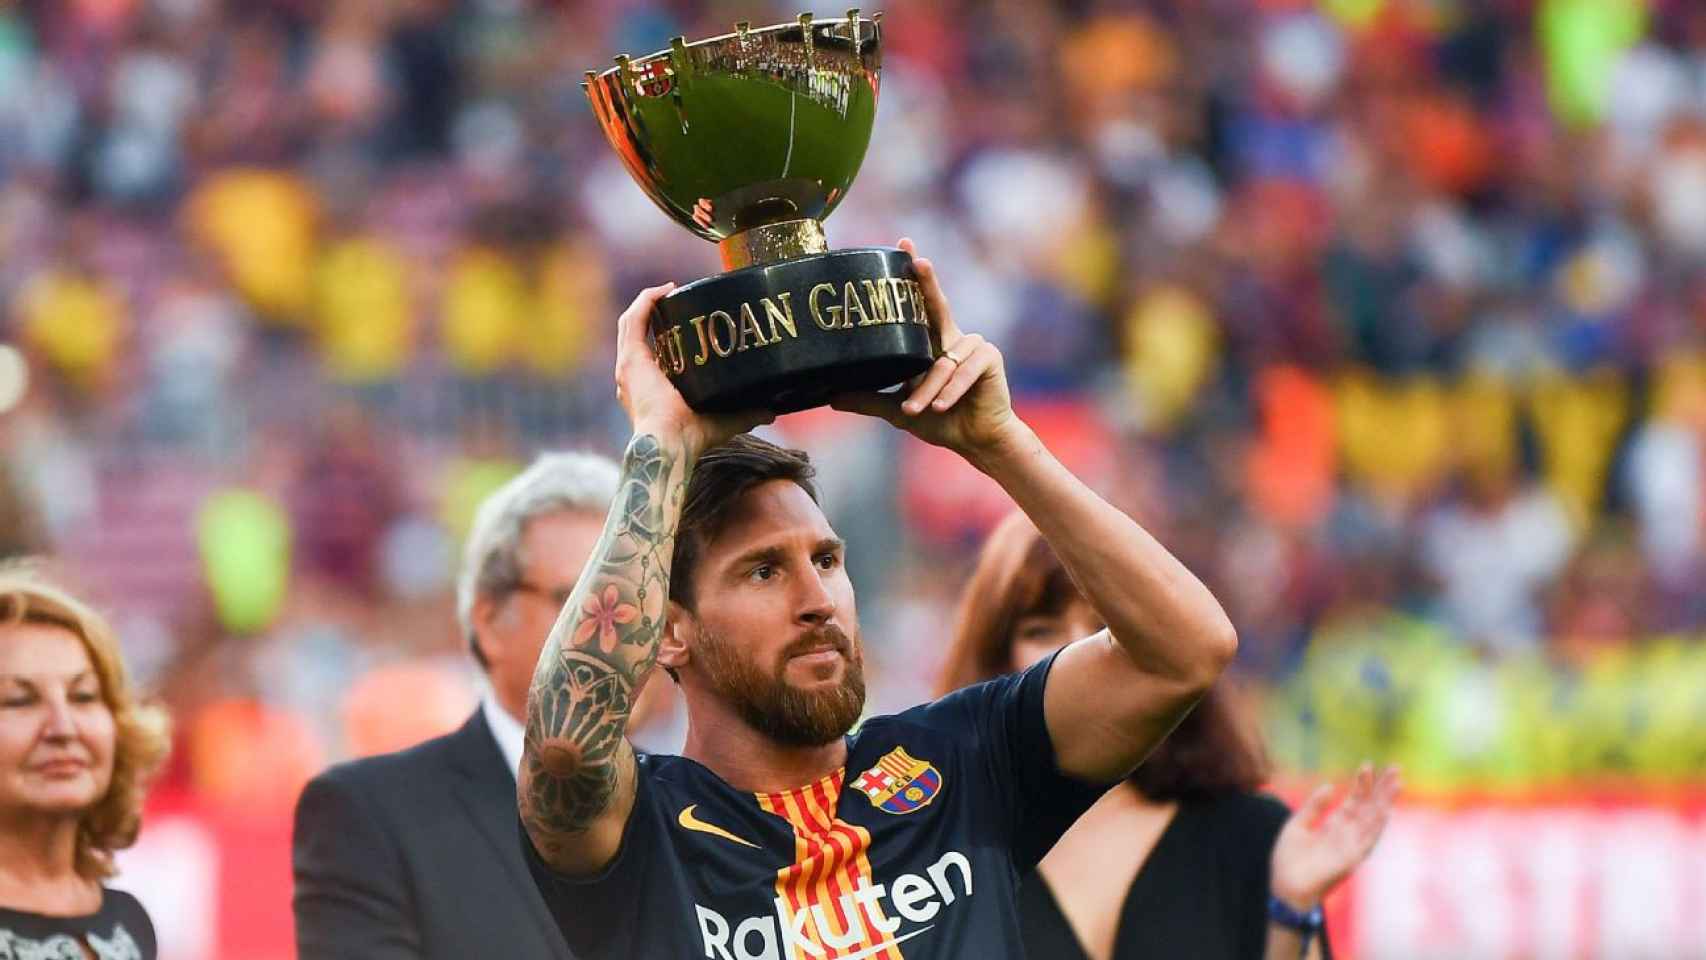 Leo Messi levantando el Trofeo Joan Gamper 2019 / FC Barcelona